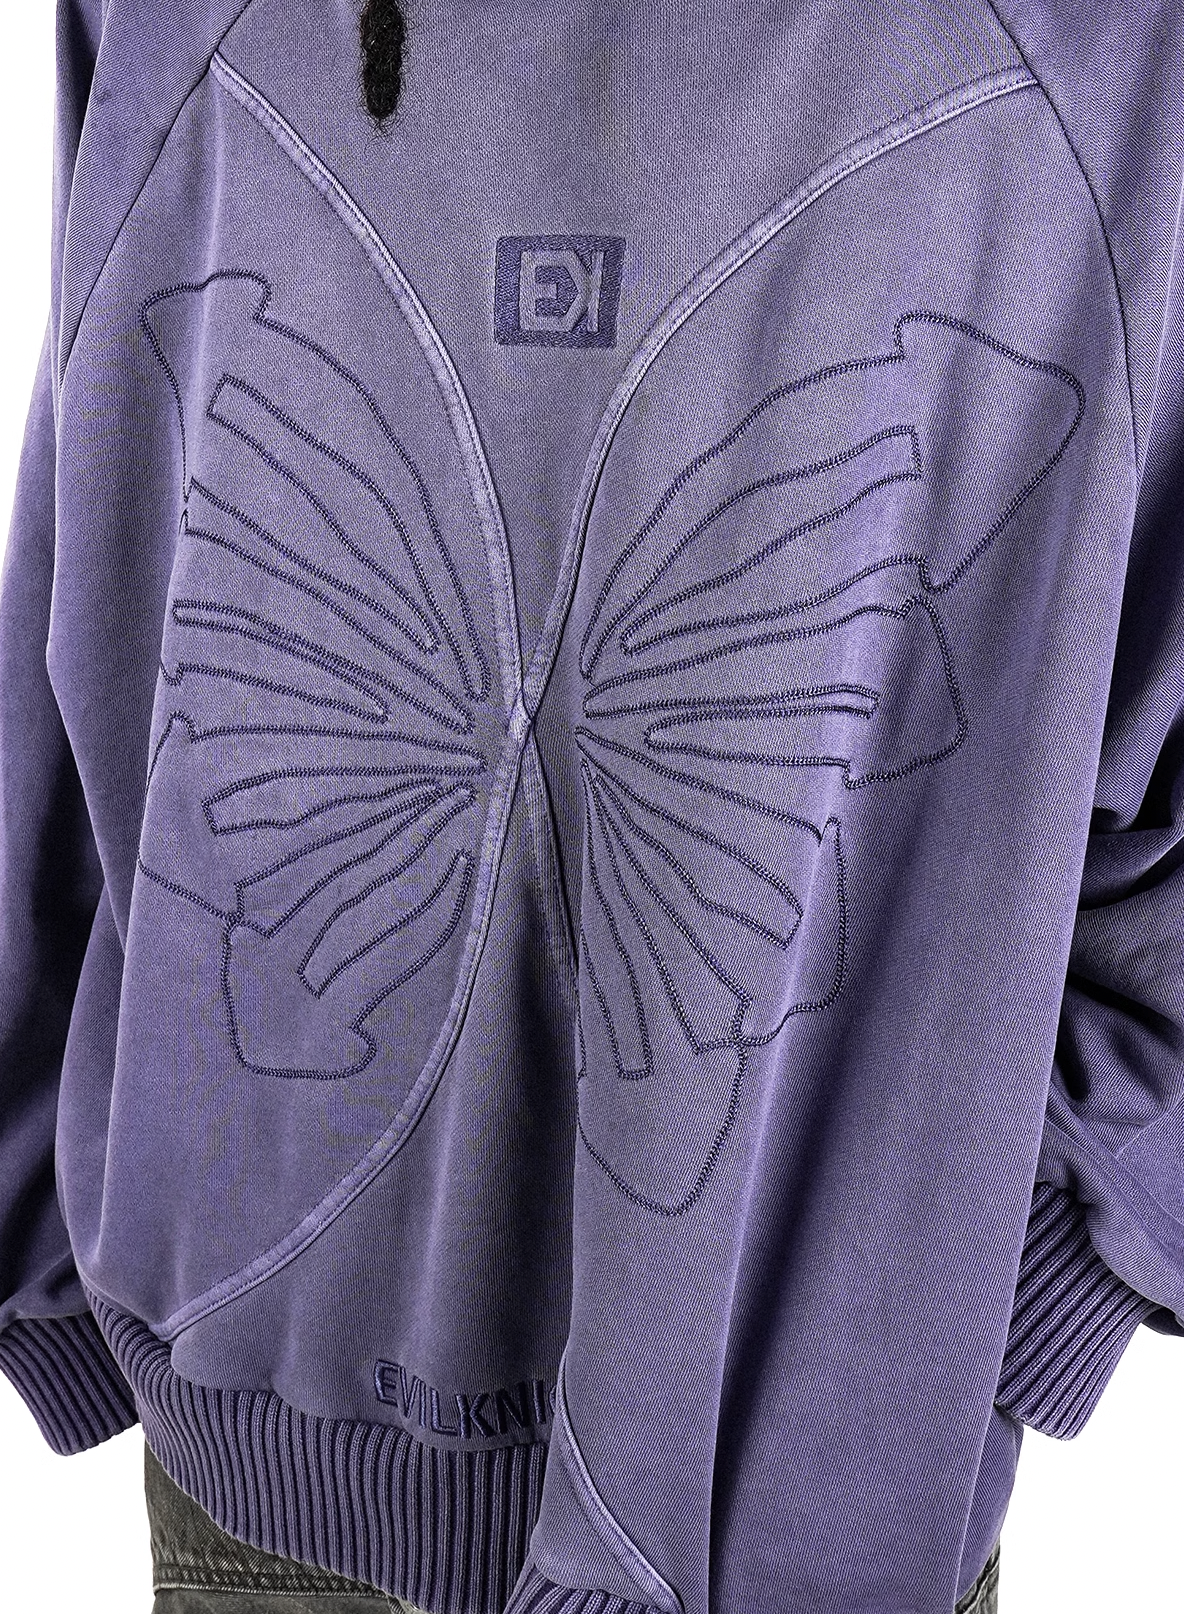 EVILKNIGHT(EK) Embroidery Butterfly Hoodie